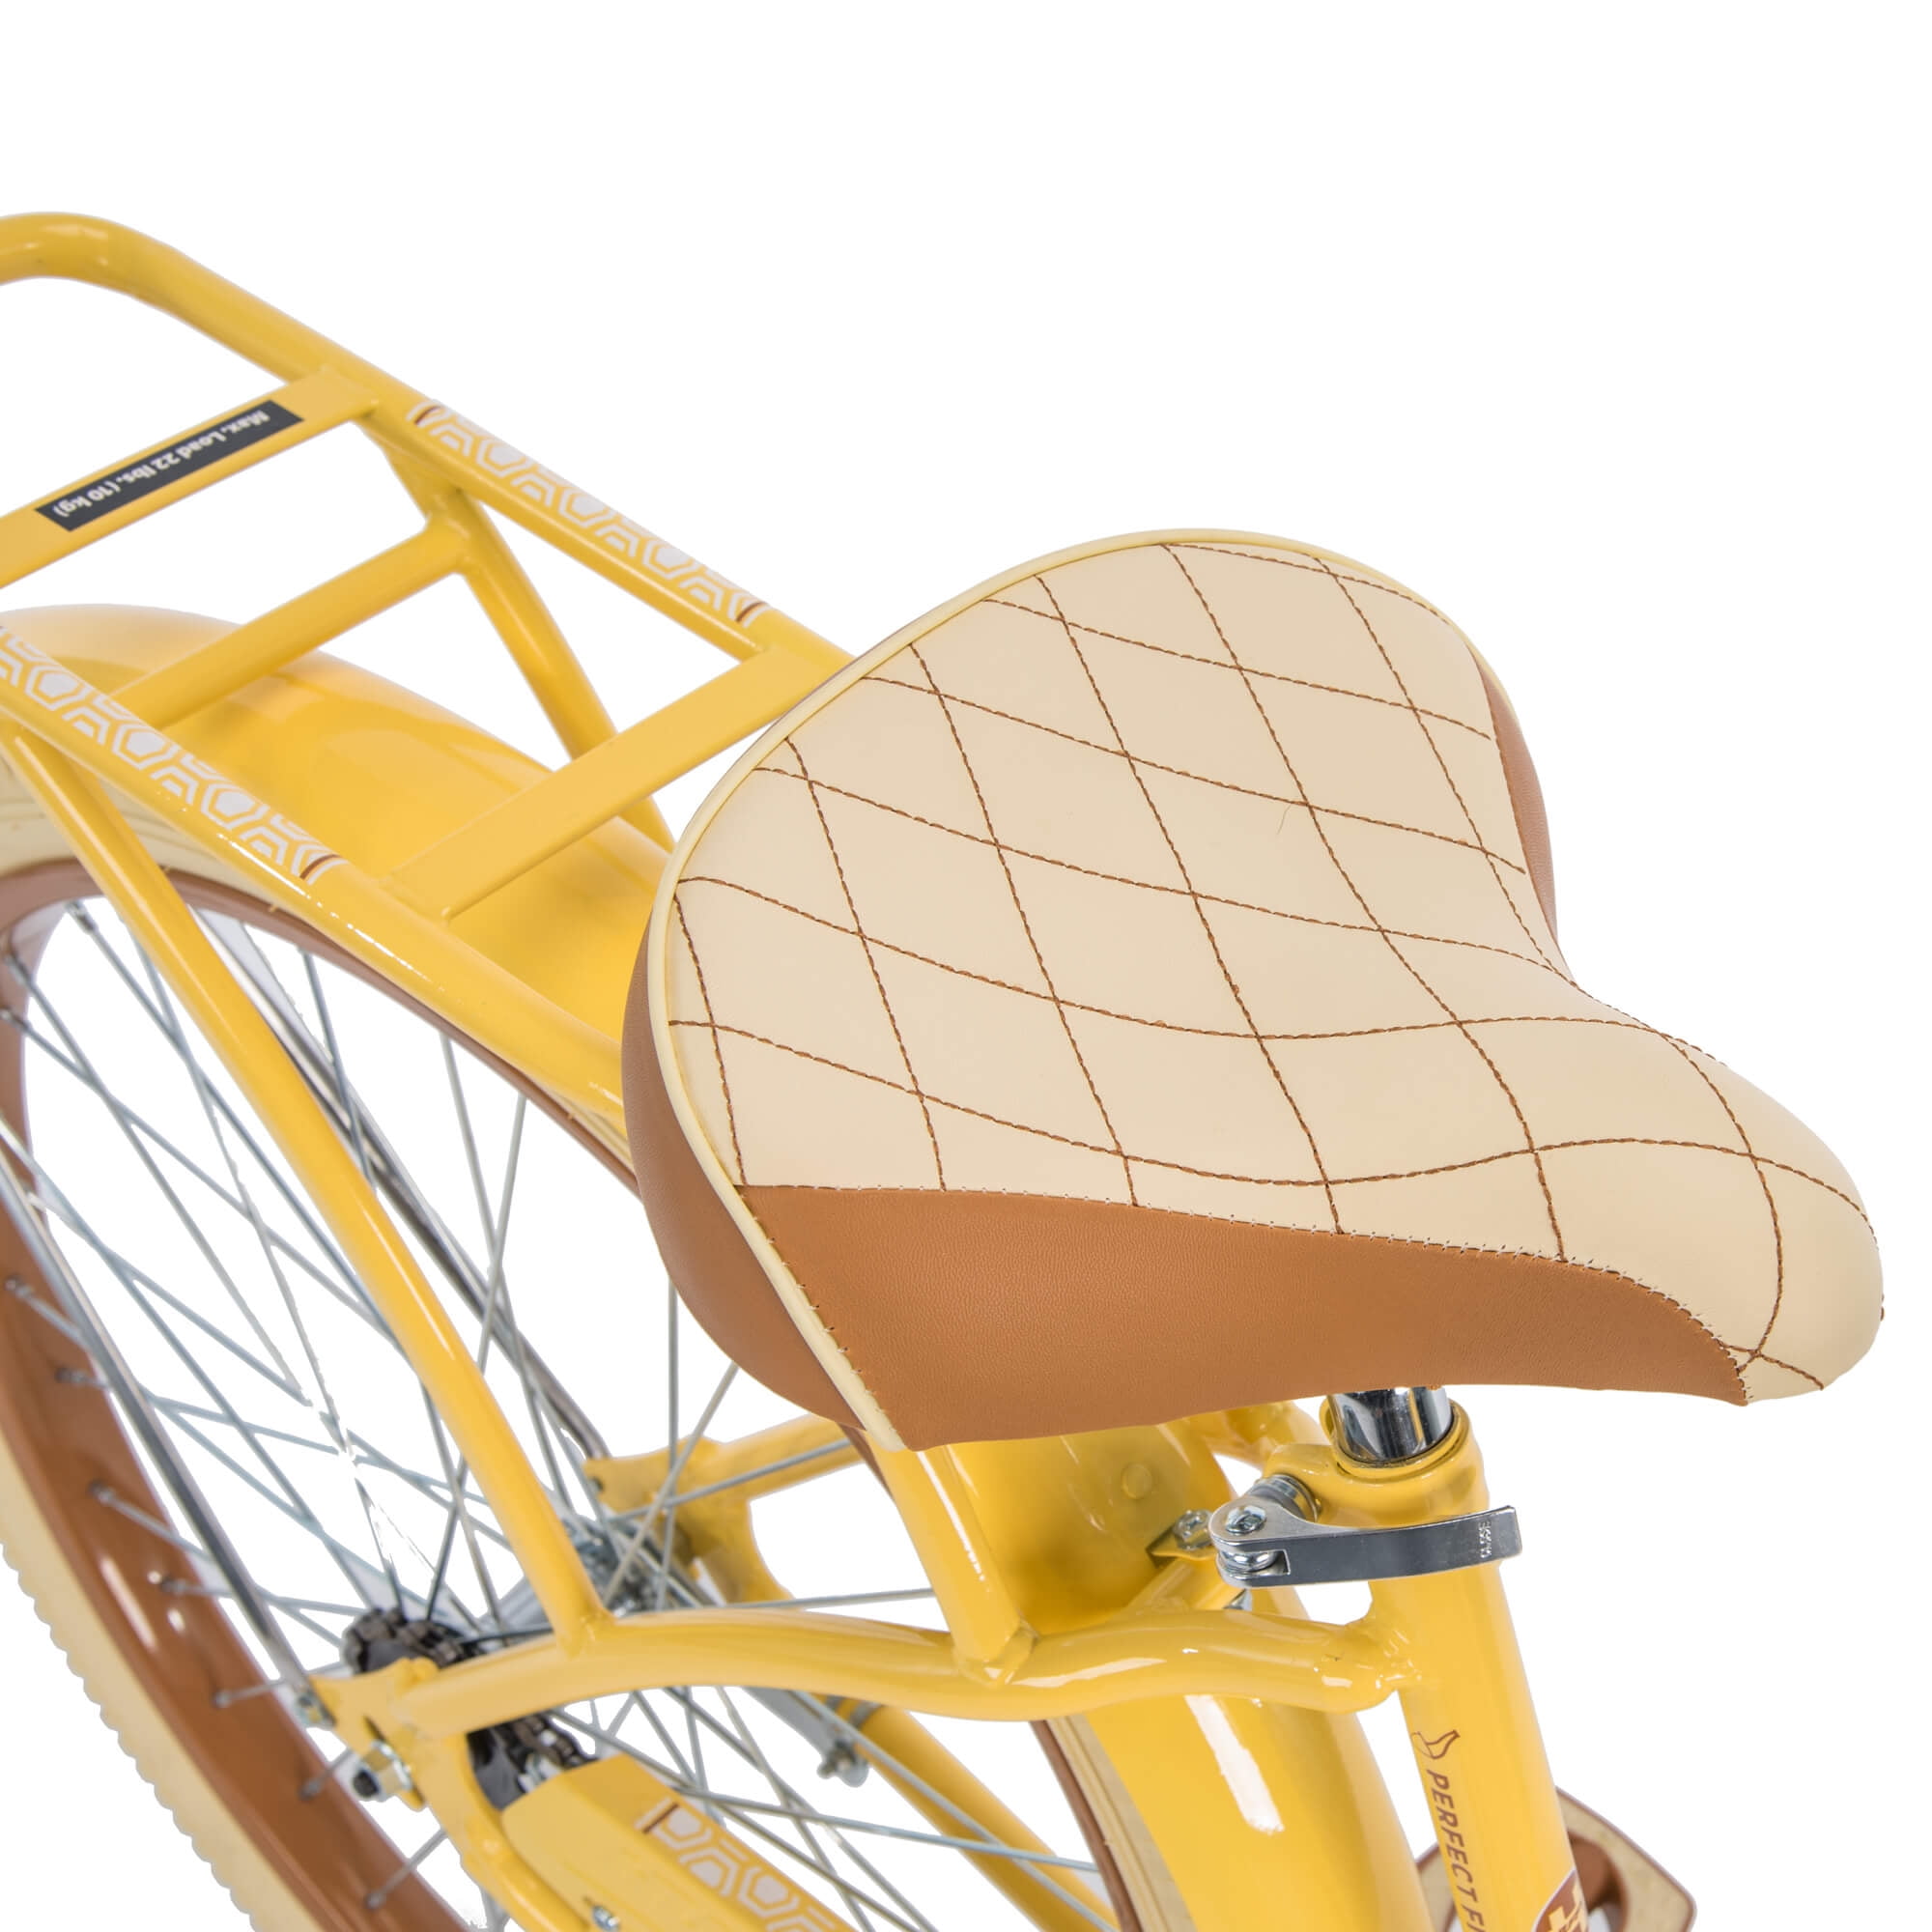 walmart yellow cruiser bike